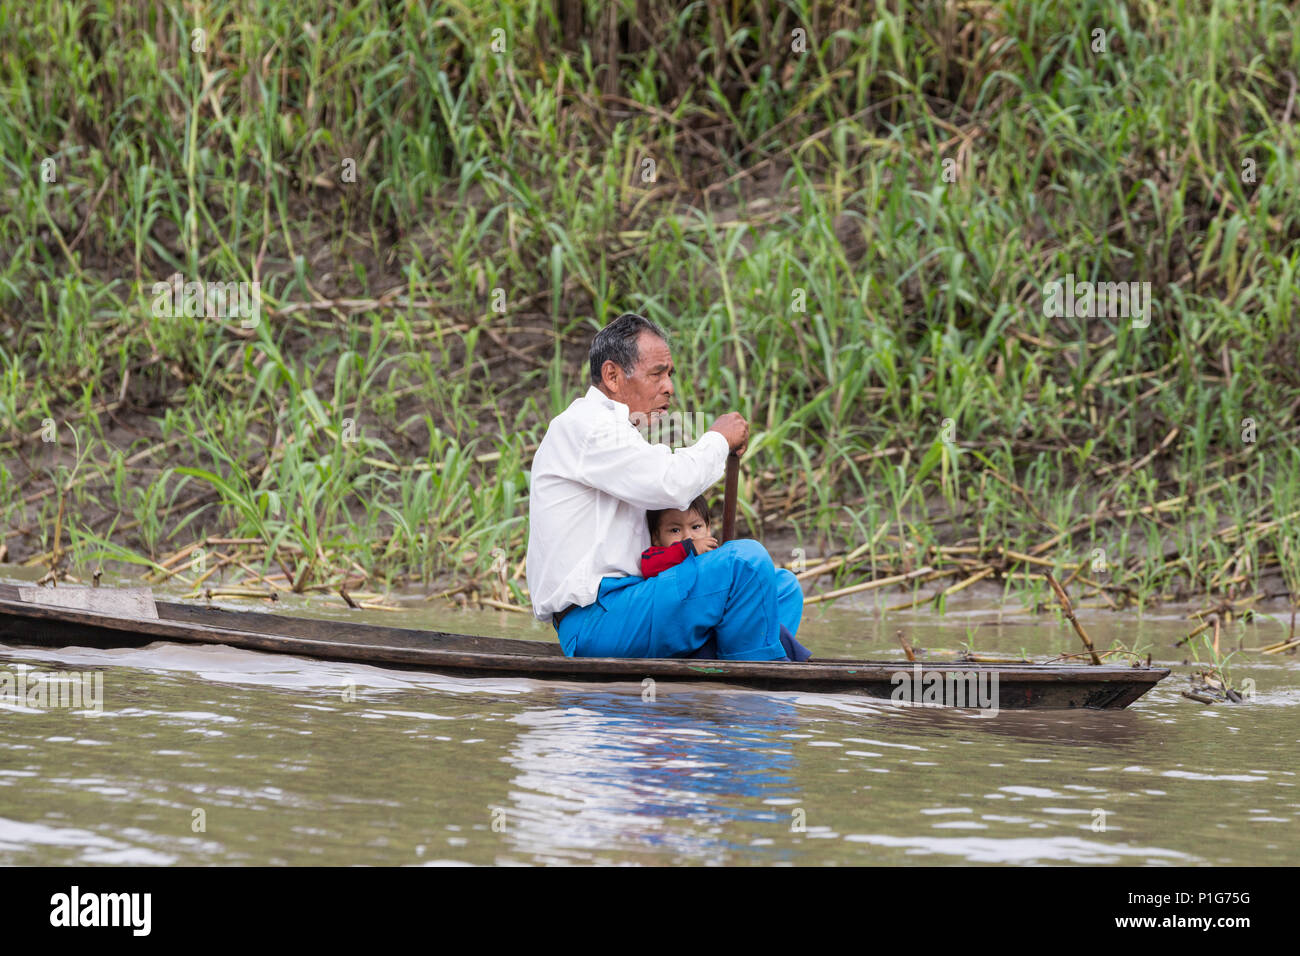 Peru amazon canoe immagini e fotografie stock ad alta risoluzione - Alamy